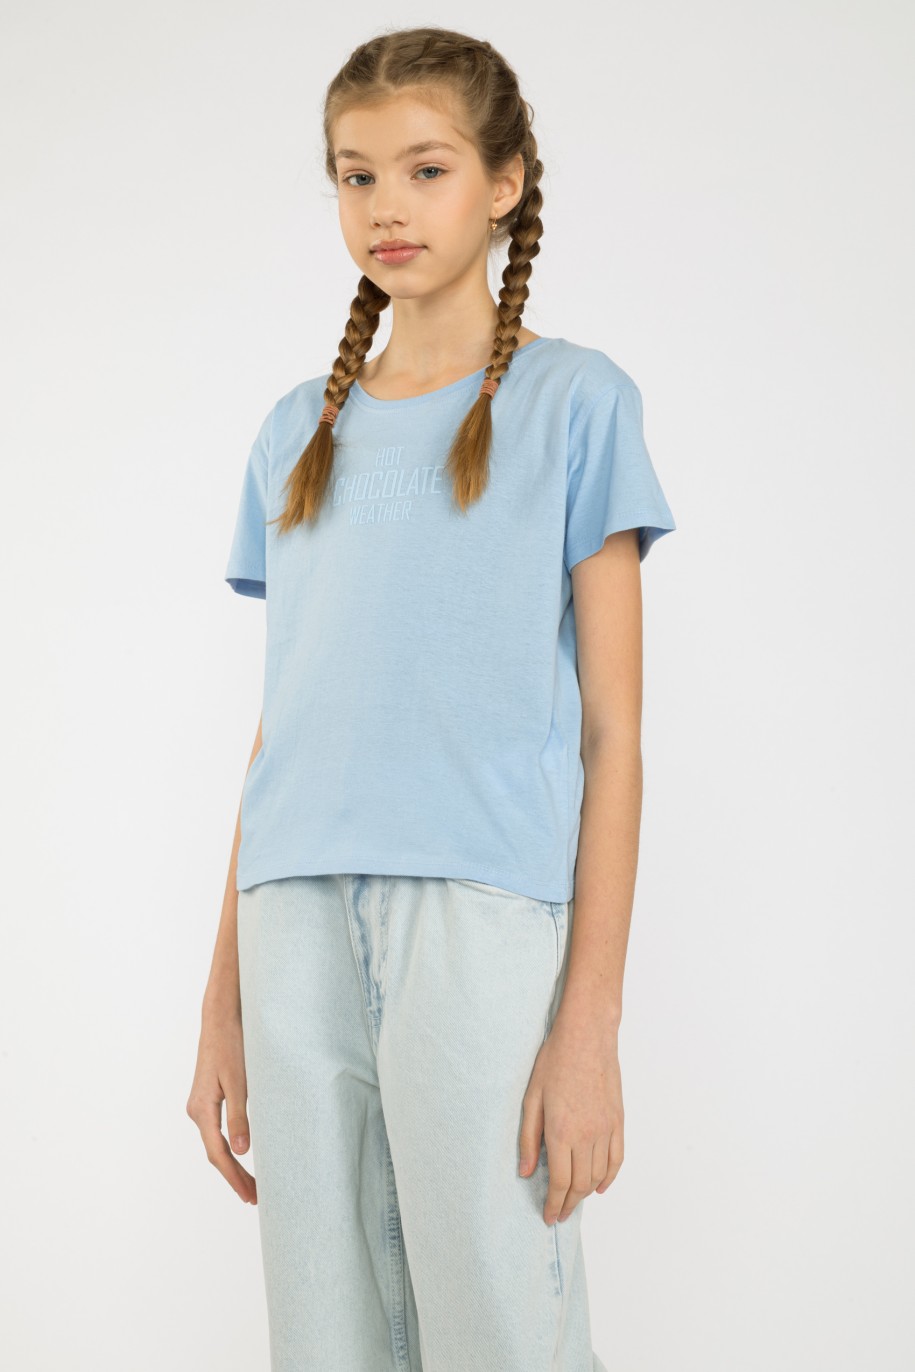 Niebieski t-shirt dla dziewczyny HOT CHOCOLATE WEATHER - 32685